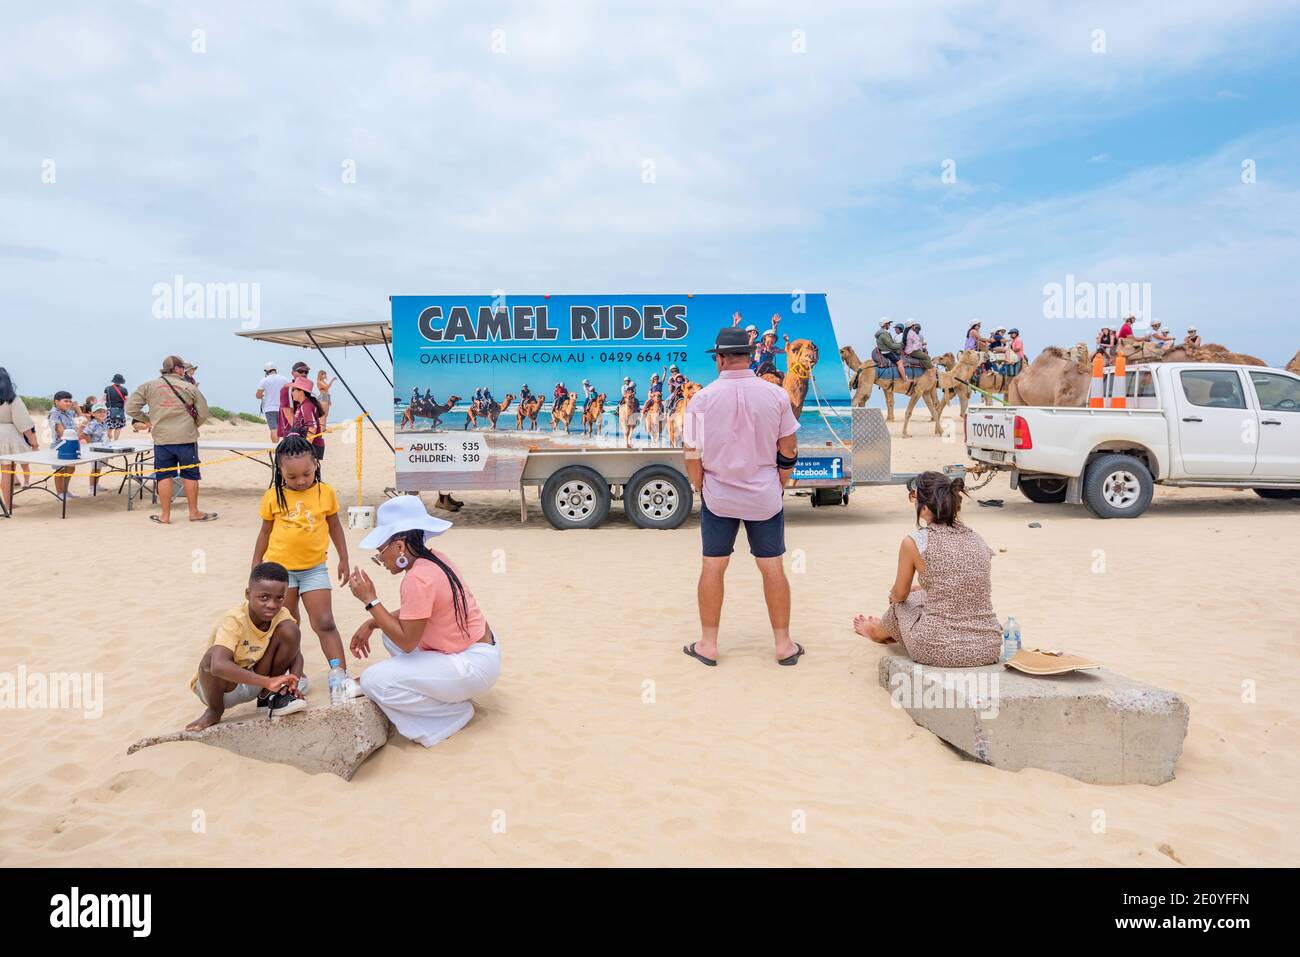 Les promenades à dos de chameau sont très populaires auprès des visiteurs de la plage de Birubi, près de la baie d'Anna et de Nelson, à Port Stephens, sur la côte nord de la Nouvelle-Galles du Sud en Australie Banque D'Images